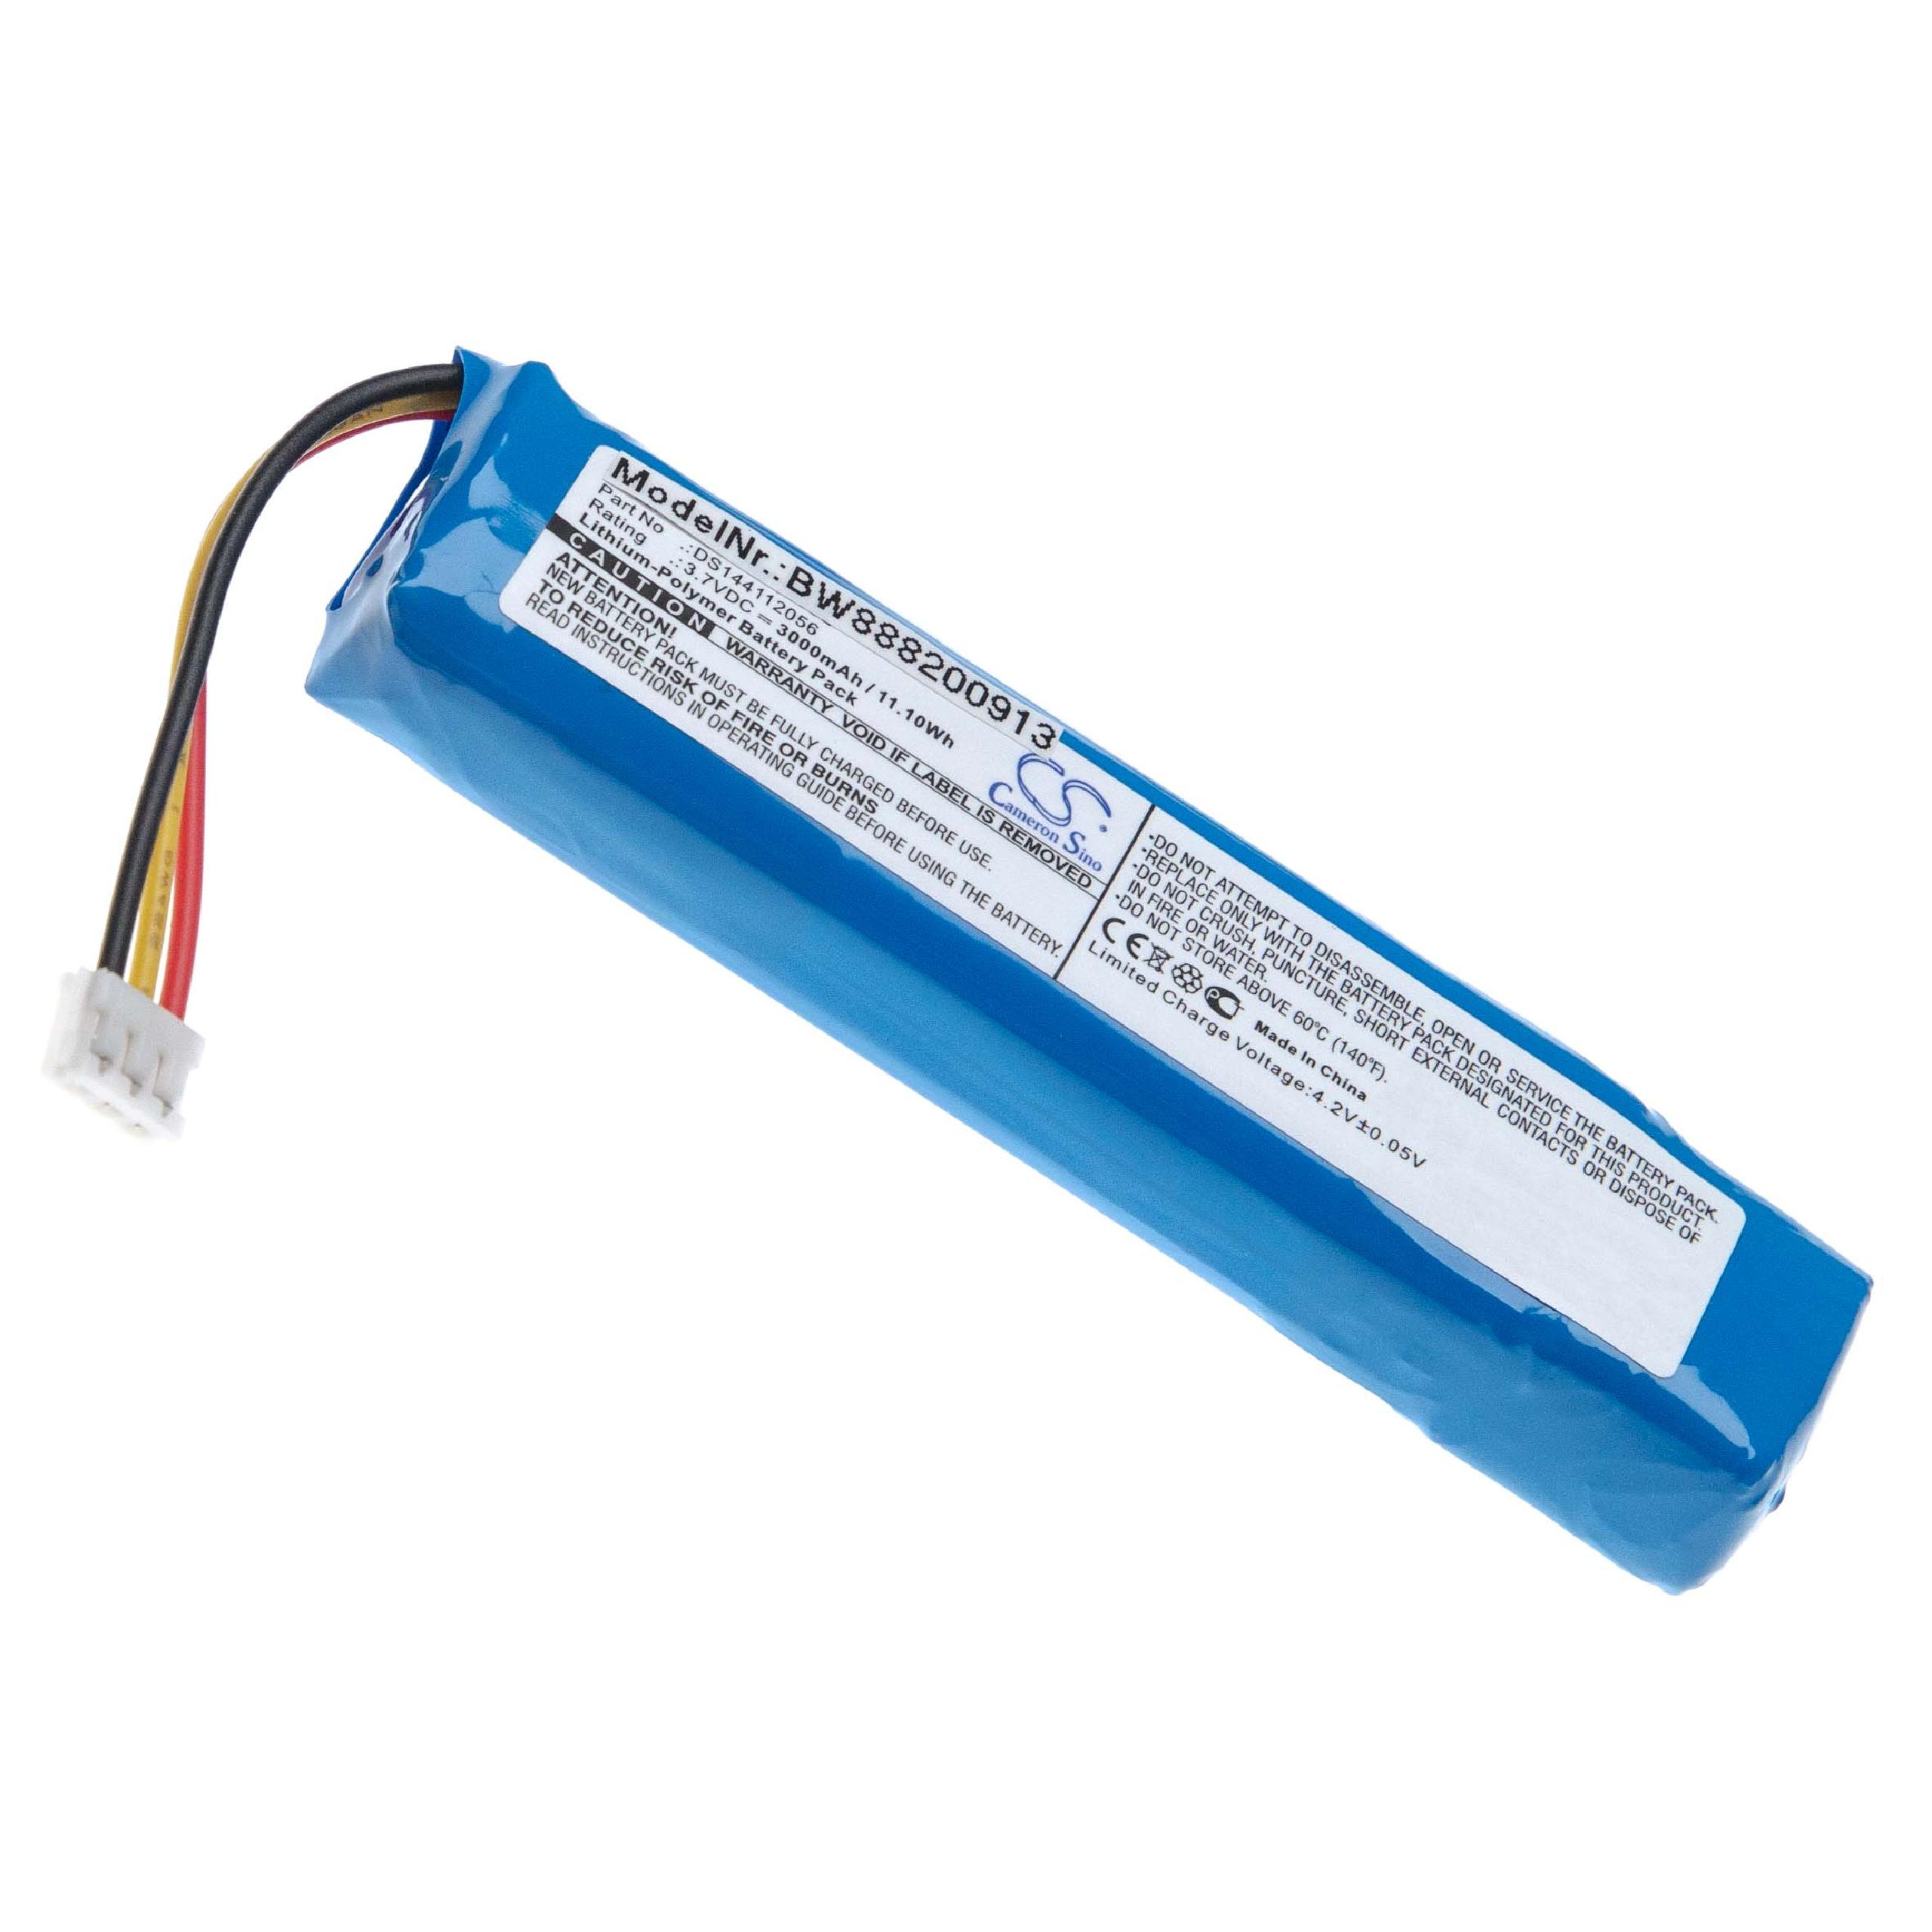  Battery replaces JBL MLP822199-2P, DS144112056 for JBLLoudspeaker - Li-polymer 3000 mAh